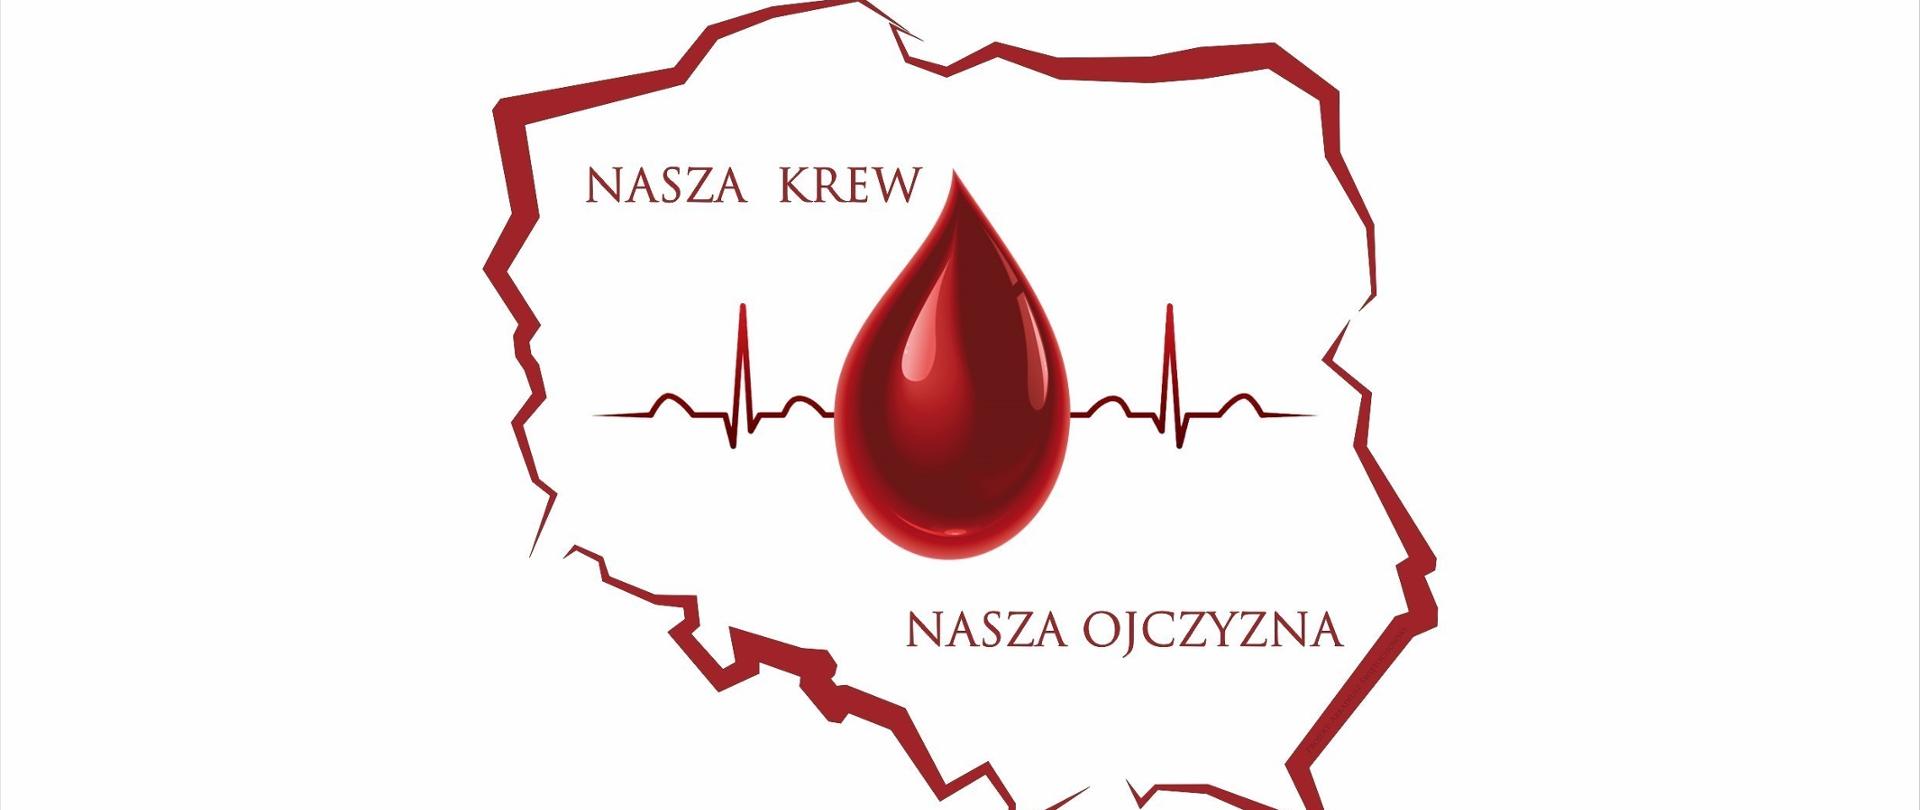 Zdjęcie przedstawia plakat akcji nasza krew nasza ojczyzna. Na konturach granicy polski umieszczona jest czerwona kropla krwi.